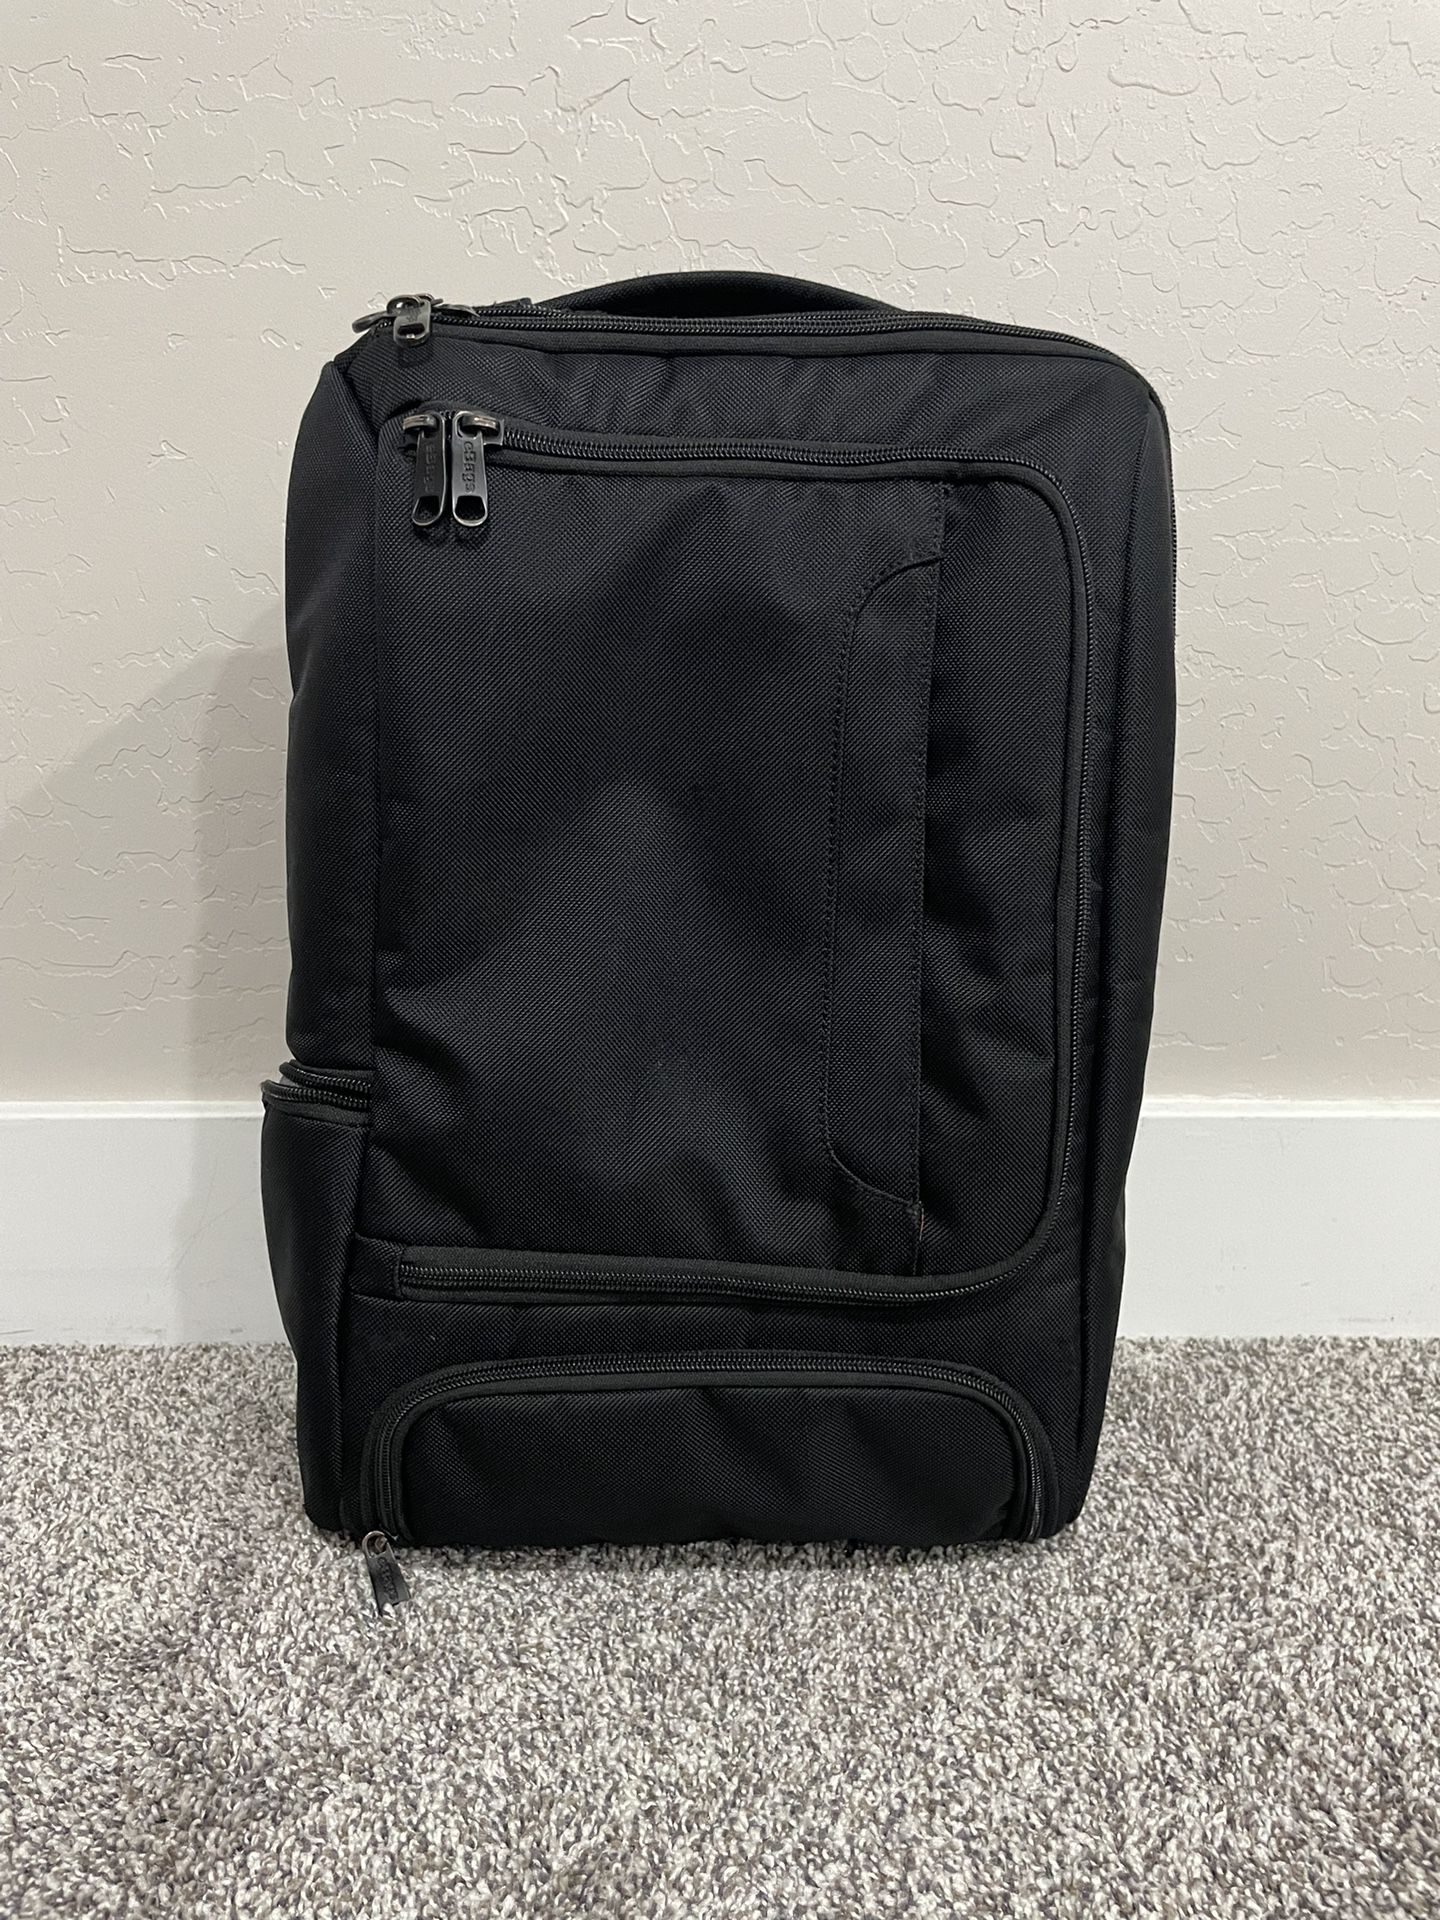 eBAGS ‘Pro Slim’ Black Nylon Laptop Backpack